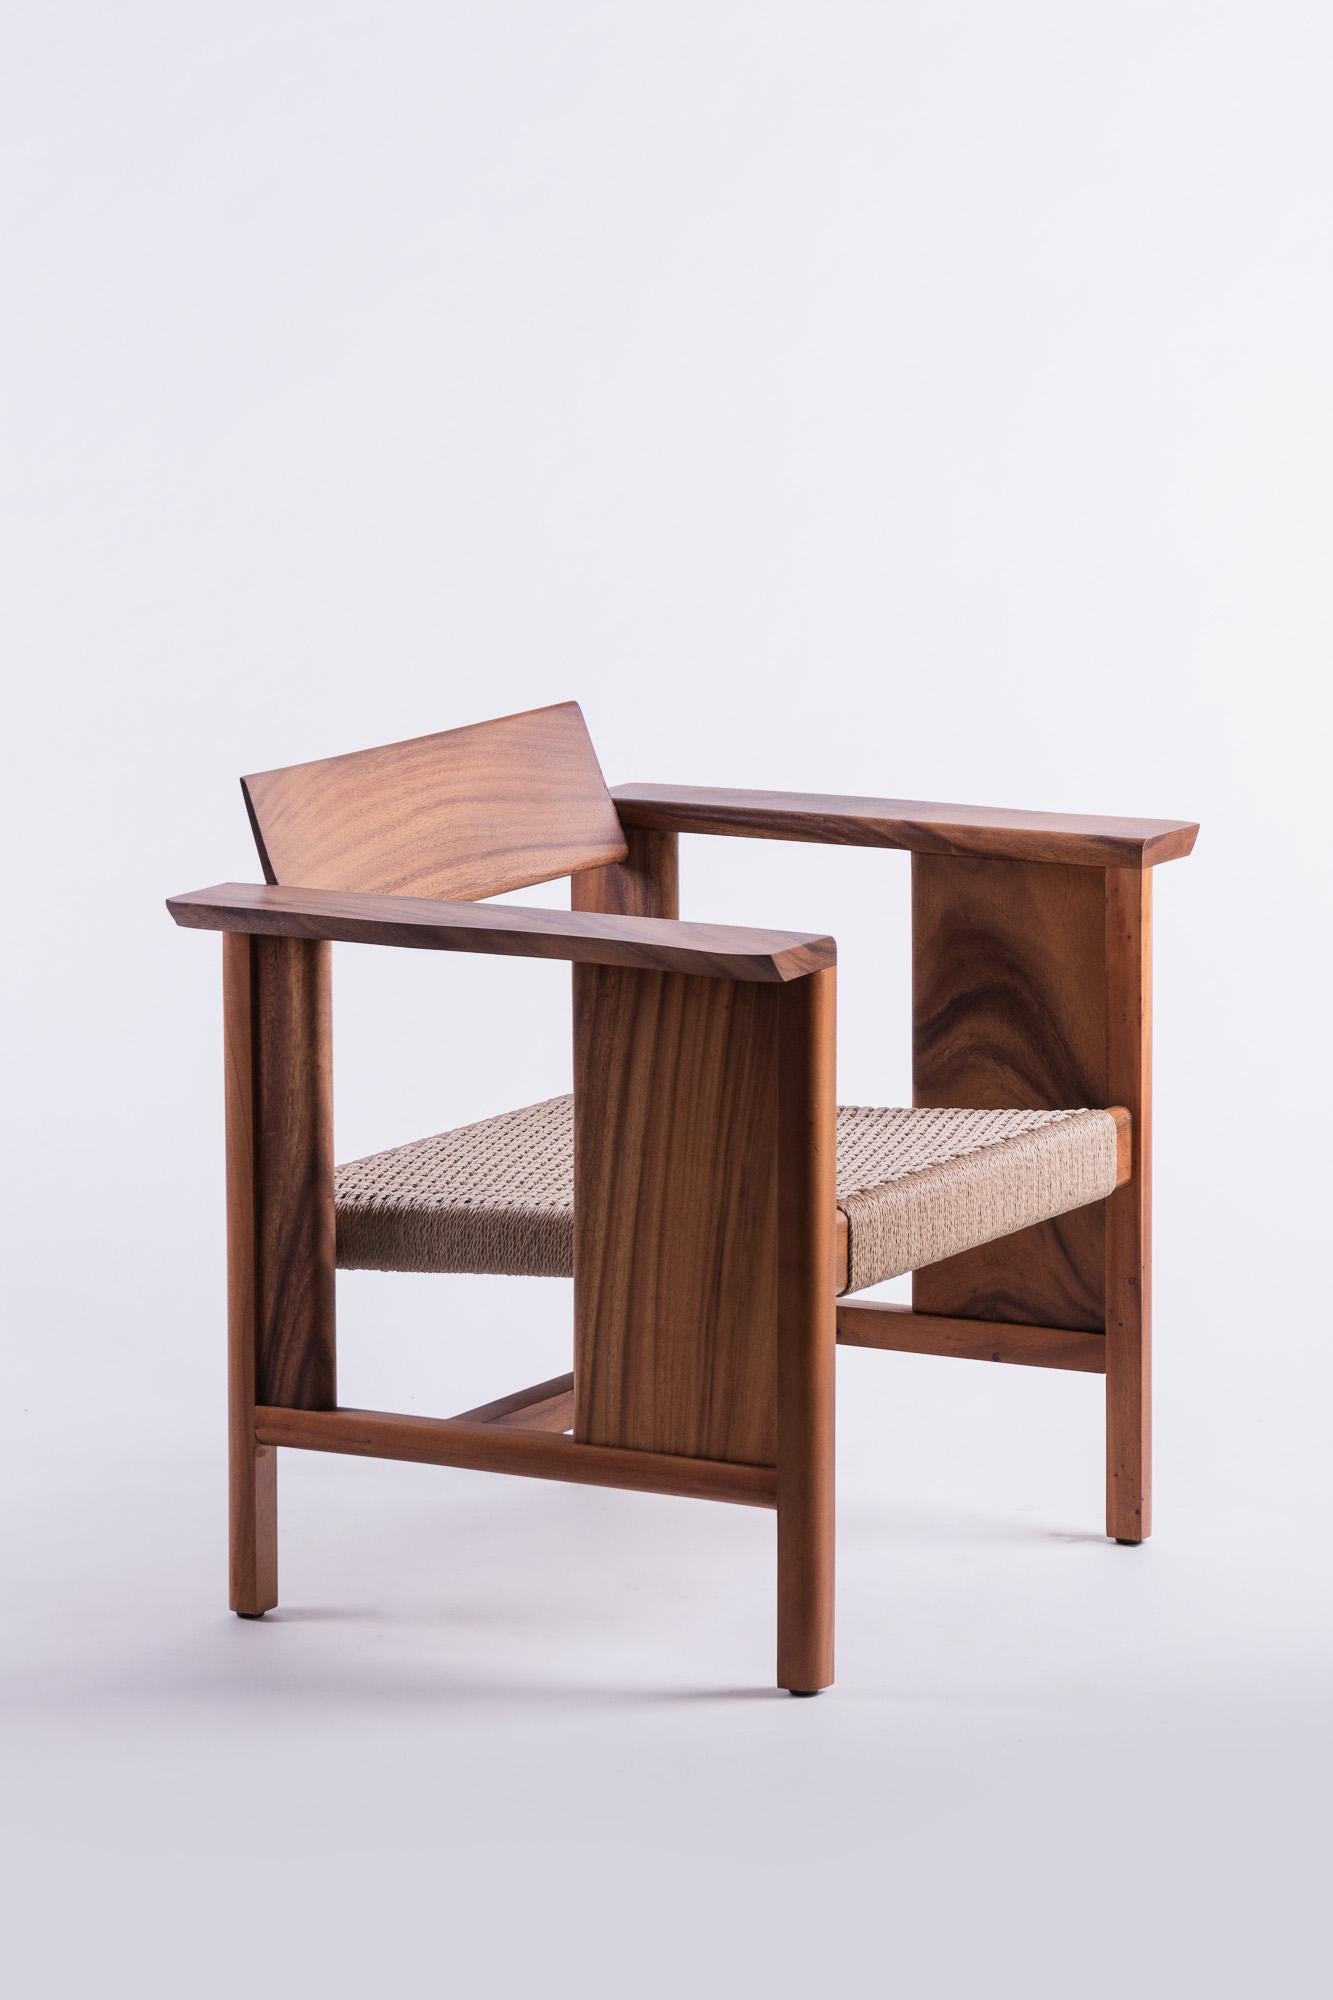 Die Phaka Lounge erweitert die Designkonzepte der strukturellen Einfachheit und der spirituellen Essenz der Materialität auf ein anderes Gebiet. Zusätzliche Merkmale wie Armlehnen aus Holzplatten und Korbgeflecht beeinträchtigen das bestehende